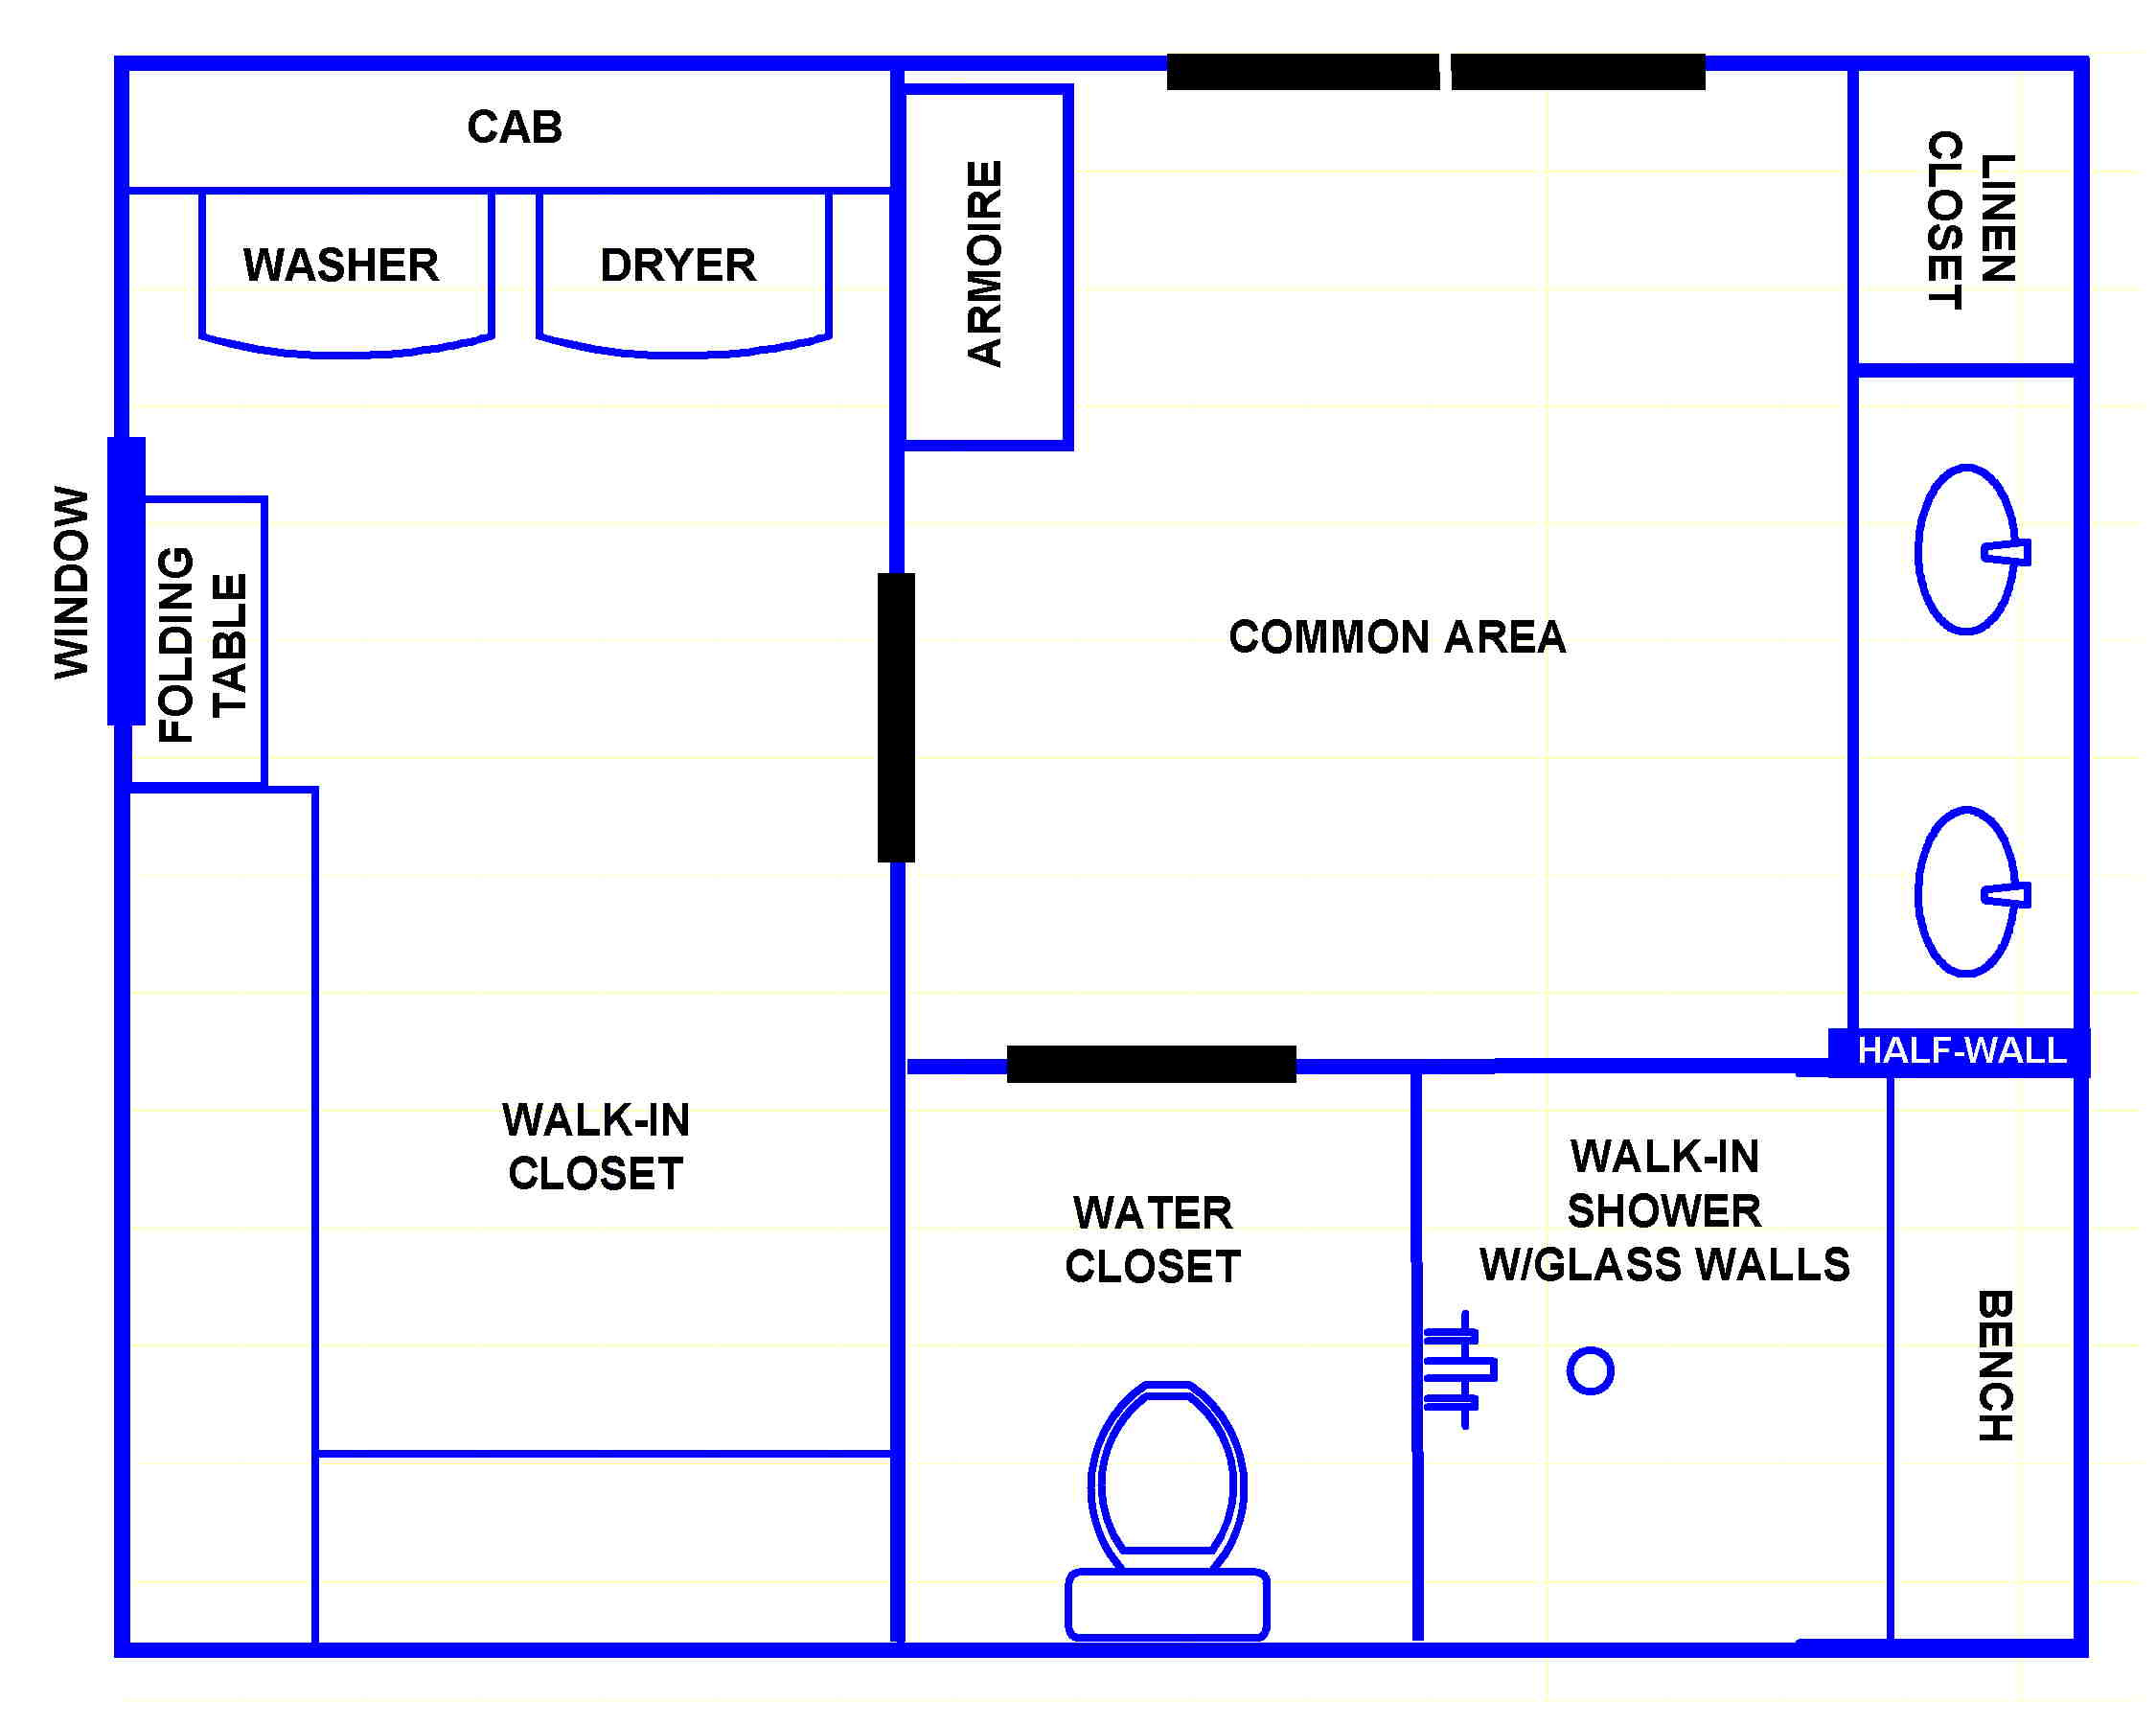 planning a bathroom layout